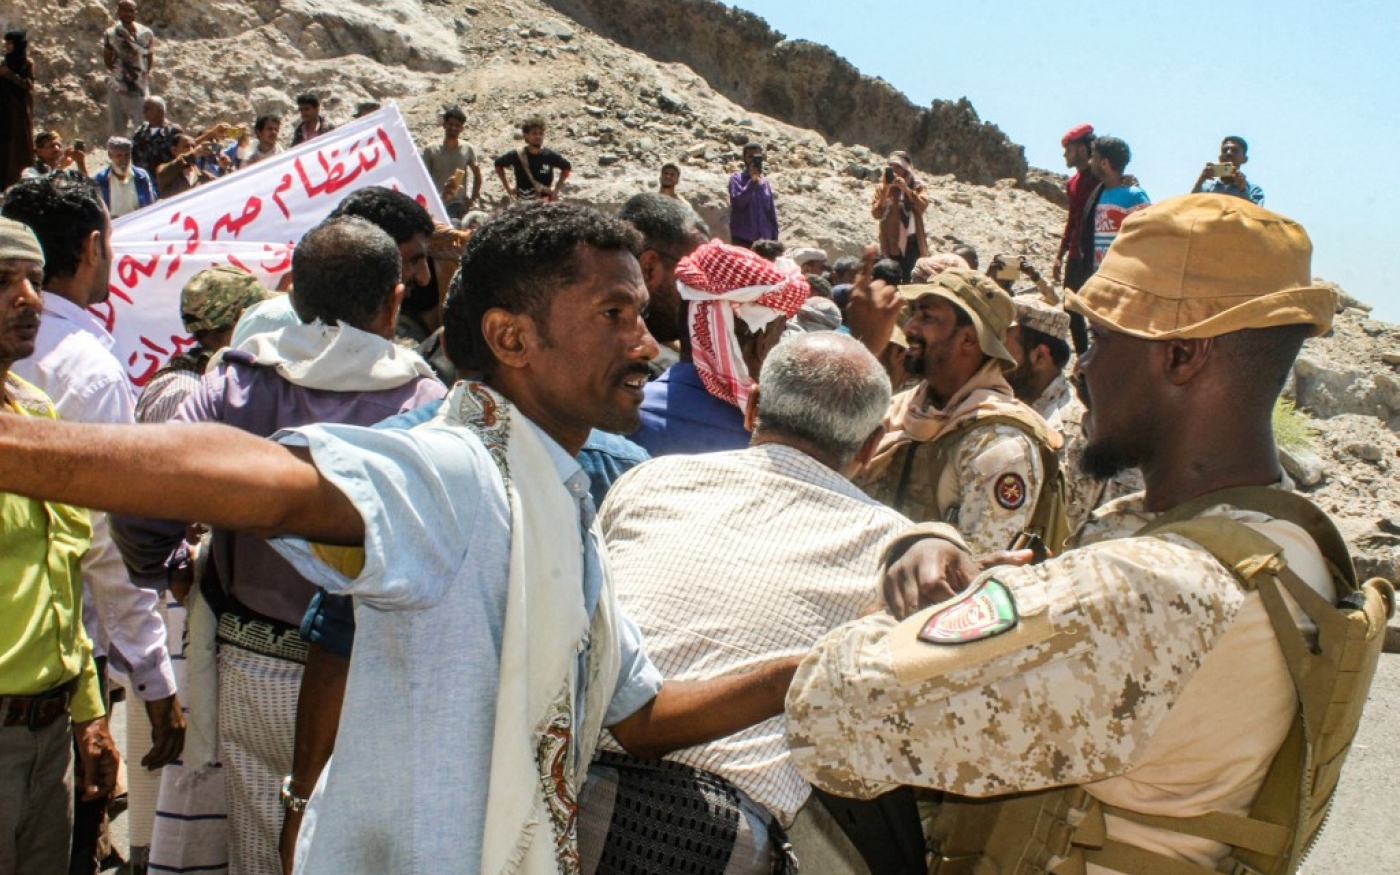 Un manifestant se dispute avec un membre des forces de sécurité de la coalition soutenue par l'Arabie saoudite devant le siège du gouvernement yéménite à Aden, au sud du pays, le 16 mars 2021 (AFP)